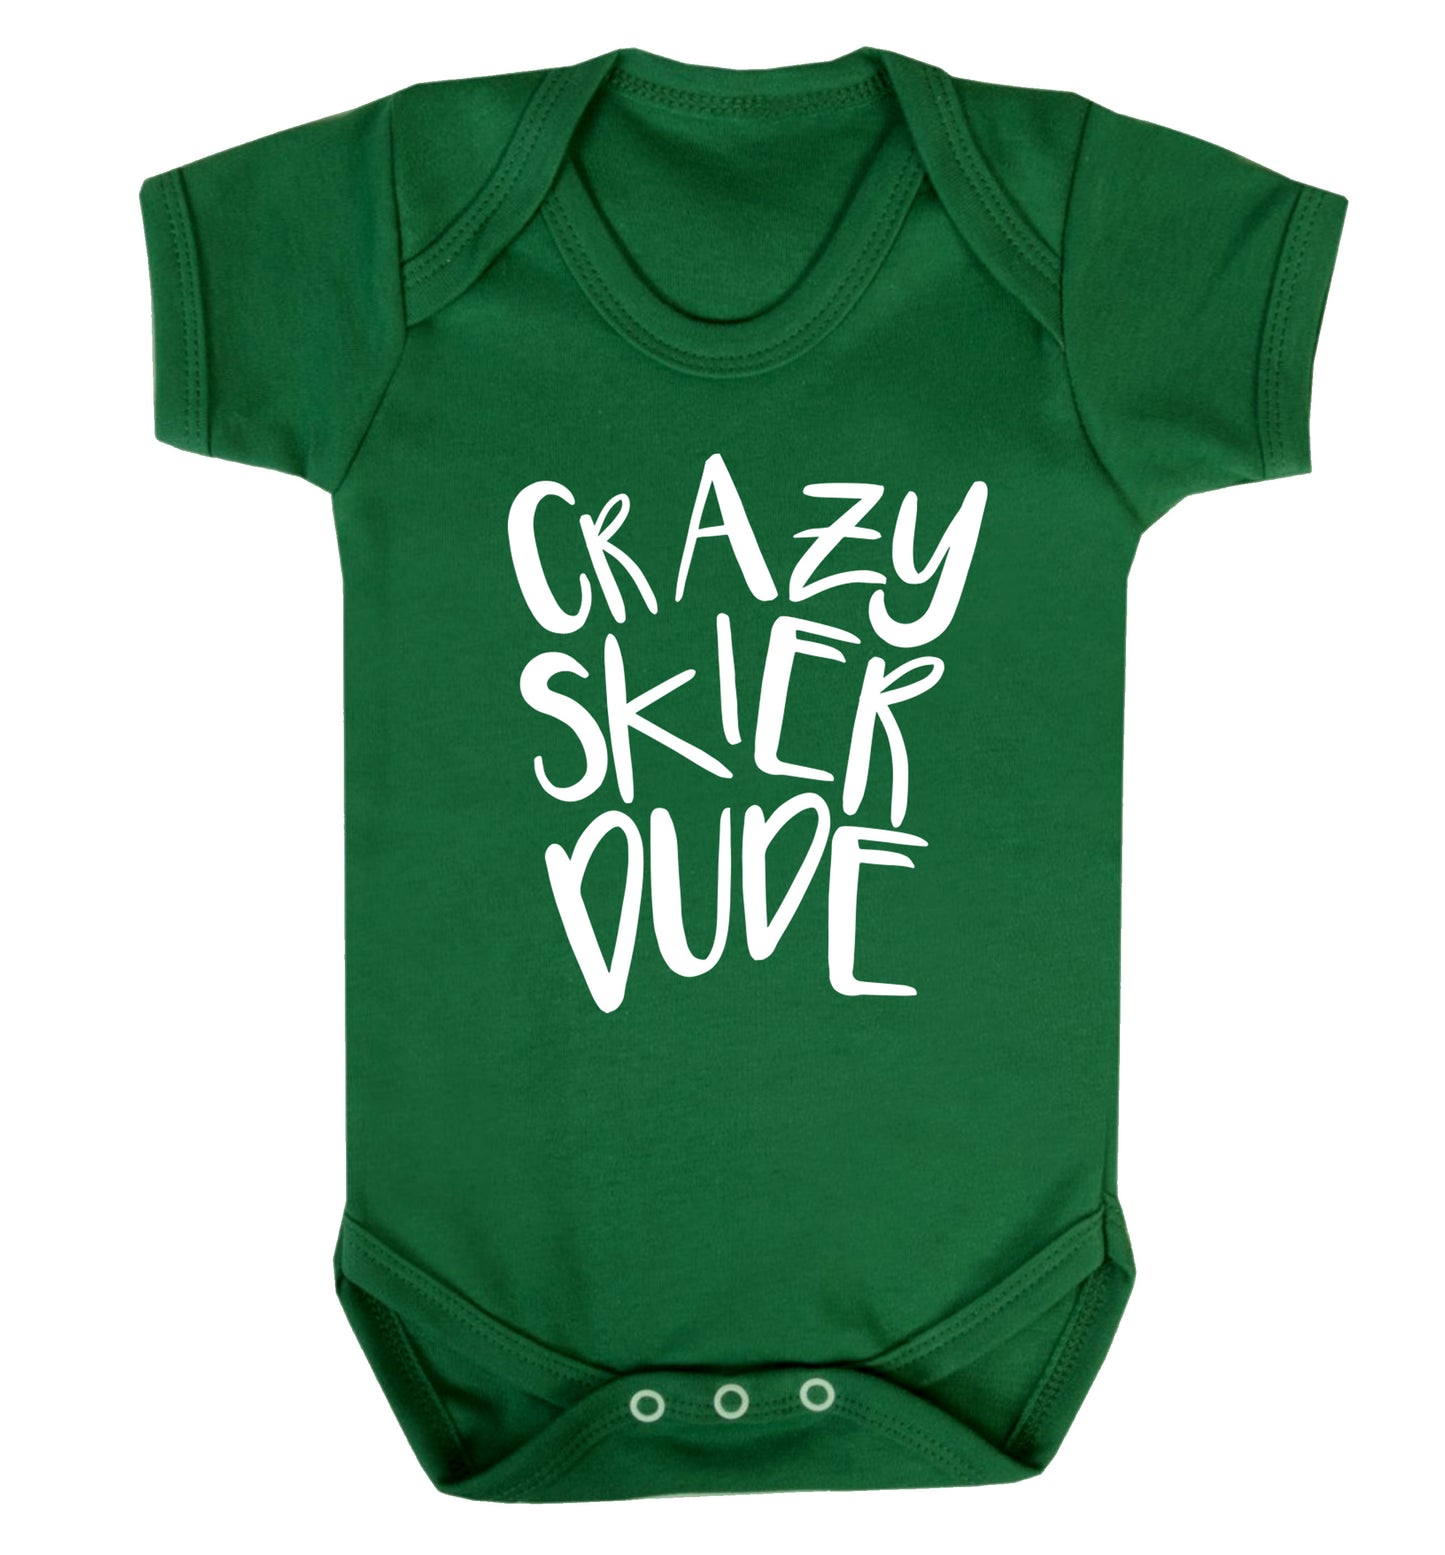 Crazy skier dude Baby Vest green 18-24 months